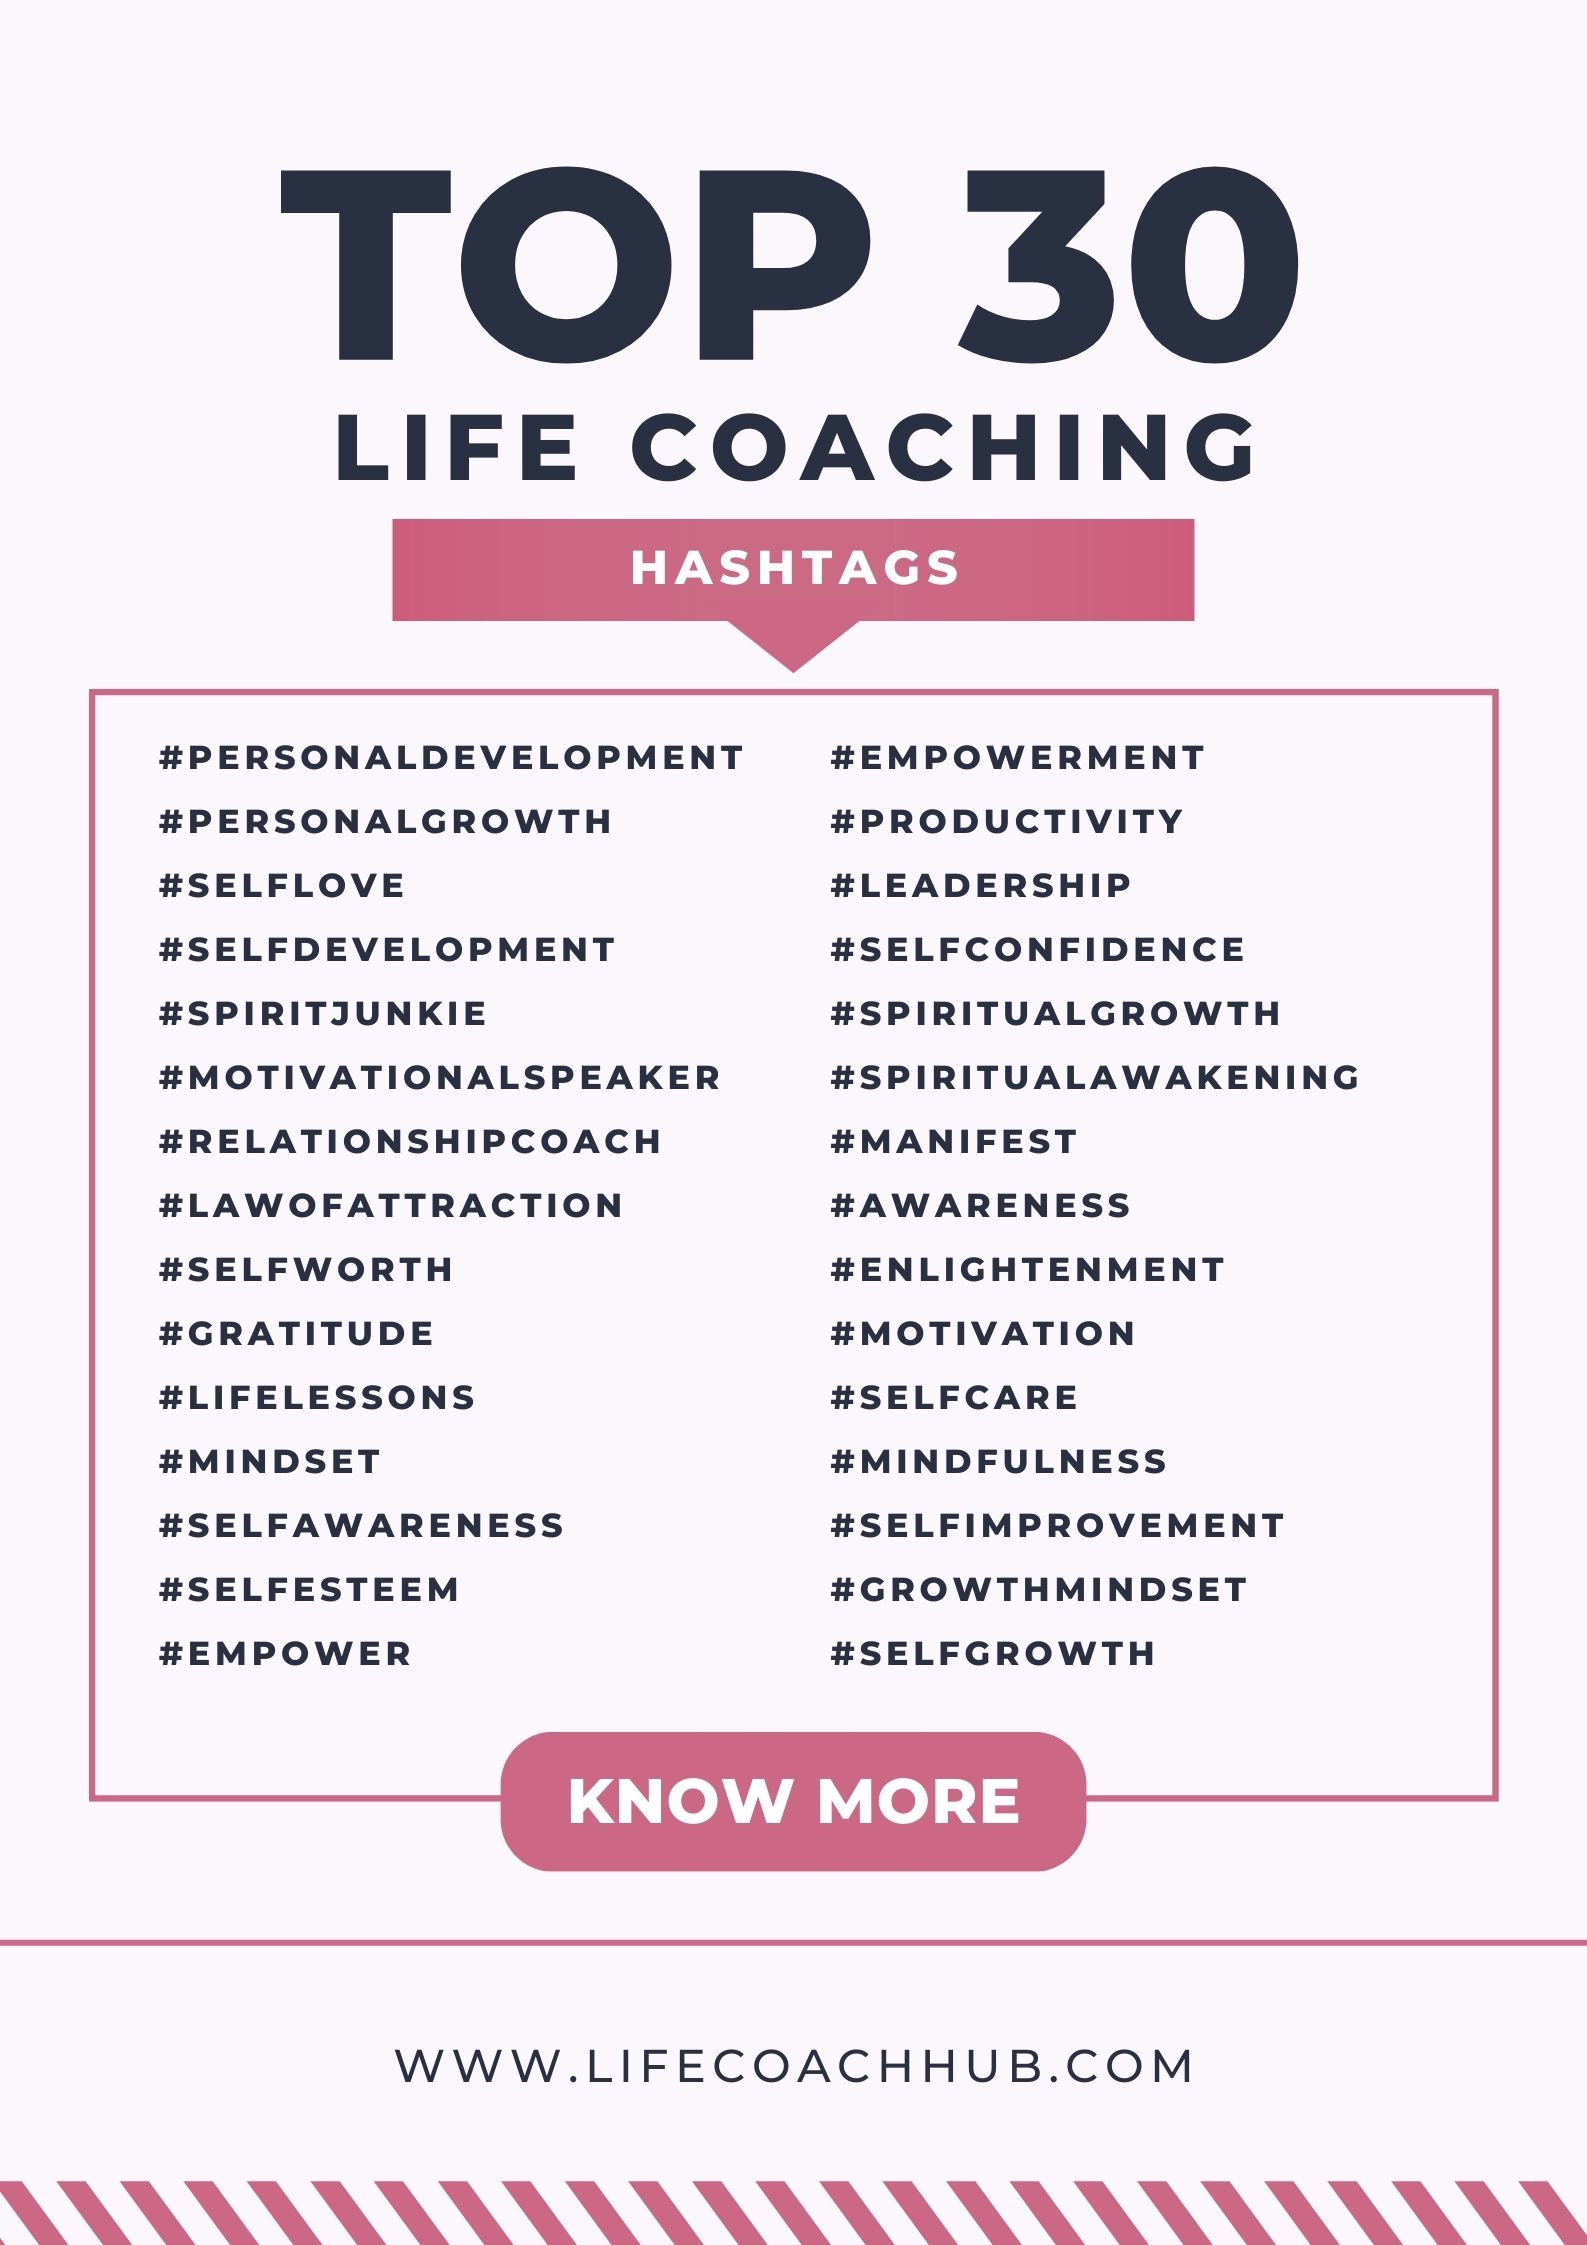 top-3-life-coaching-hashtags-coaching-tip